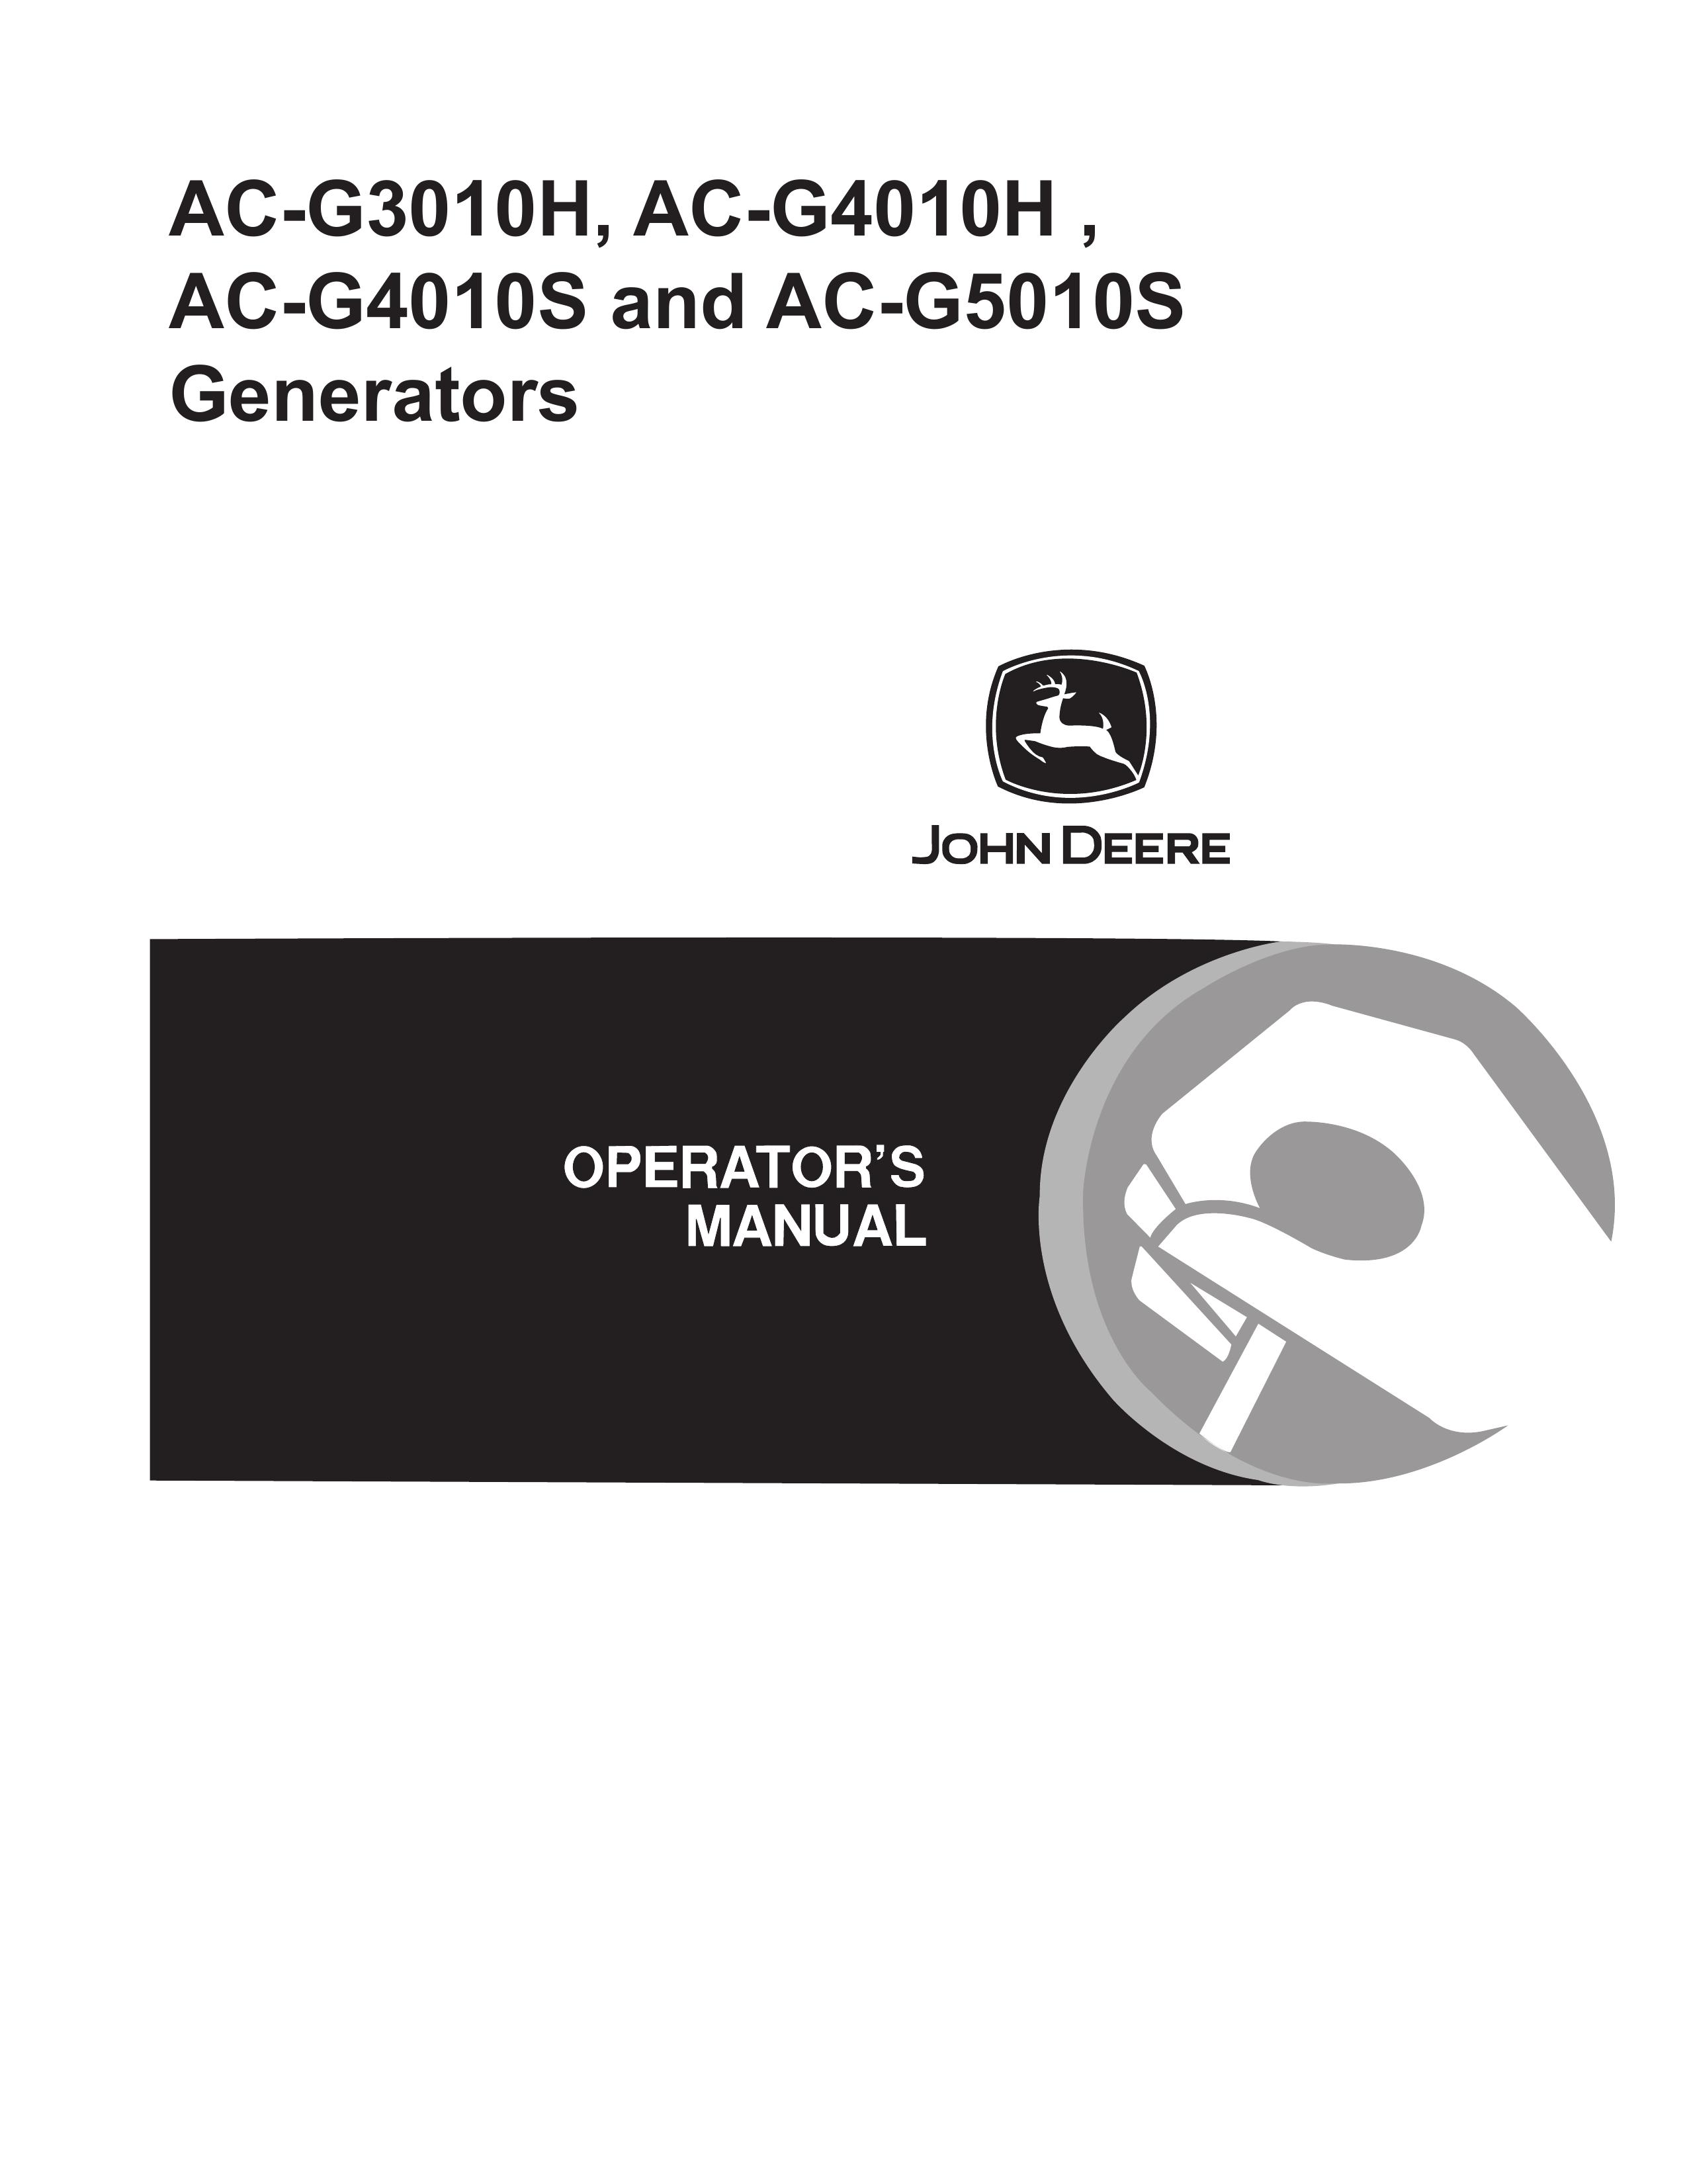 John Deere AC-G4010S Portable Generator User Manual